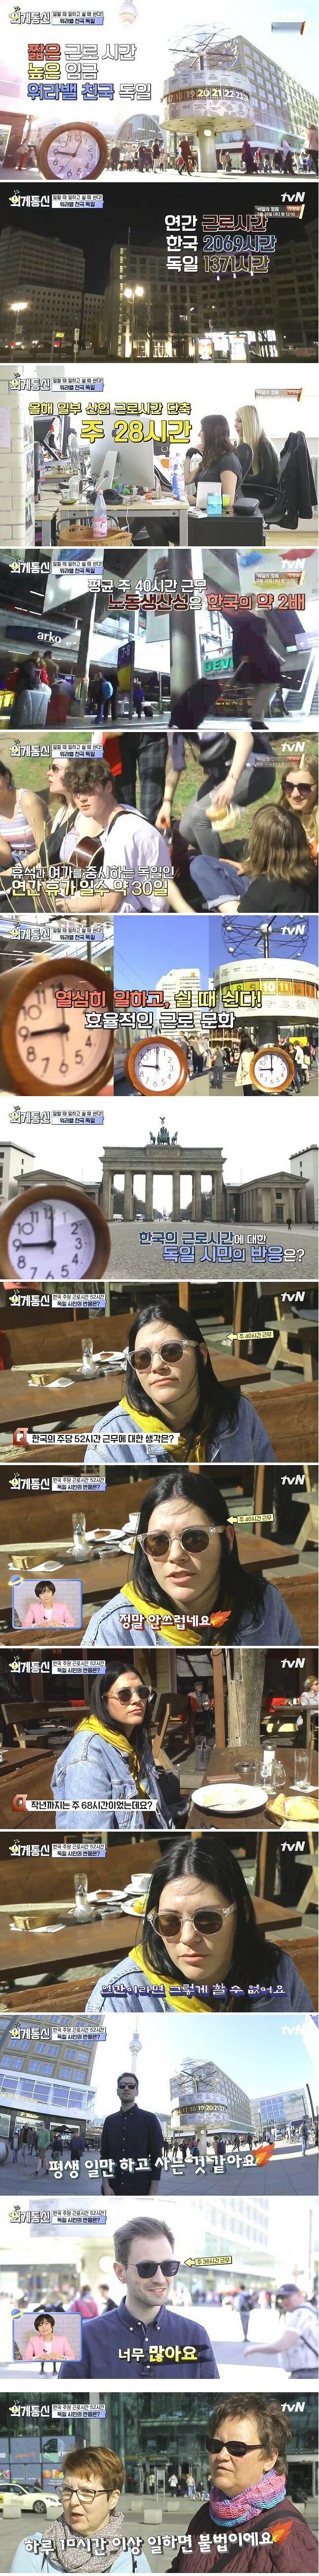 한국 근로시간에 대한 독일인들의 생각.jpg